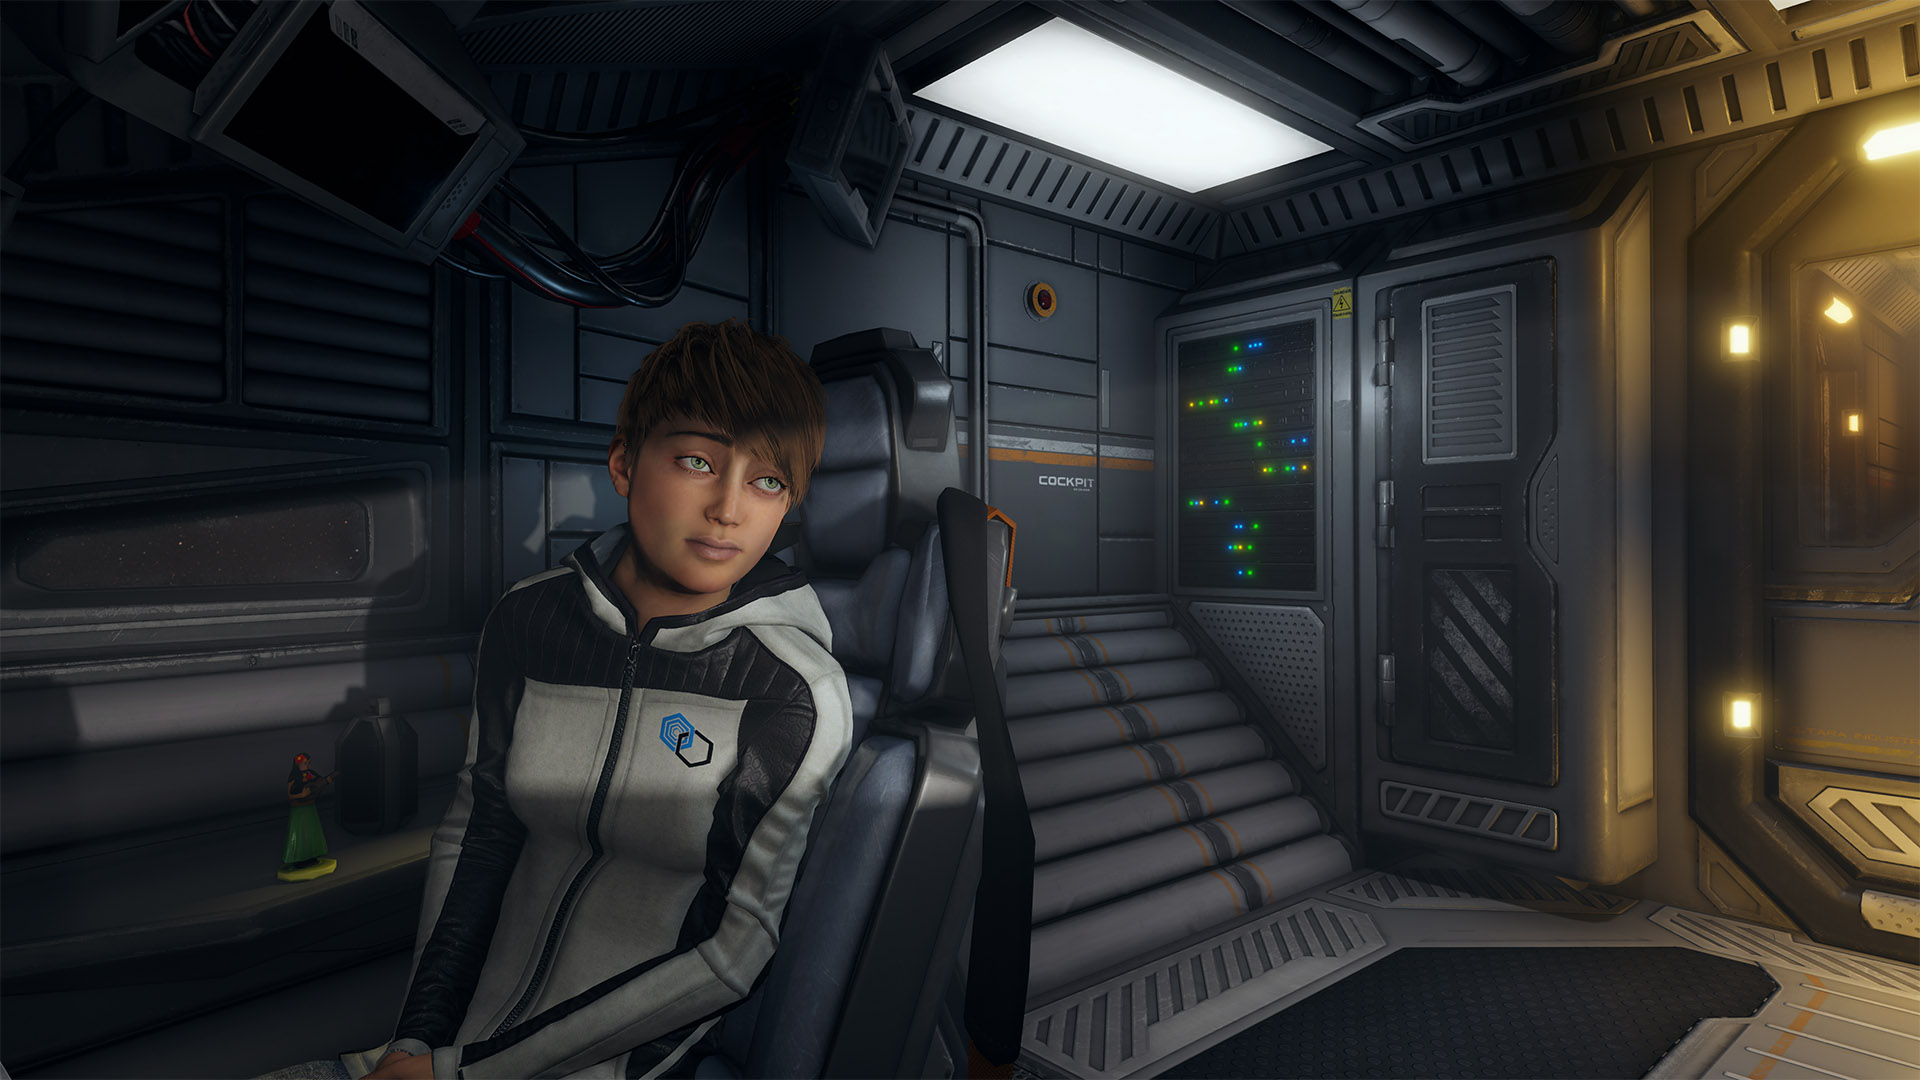 FPS游戏《月光》预告及截图公布 探索星球寻找女儿